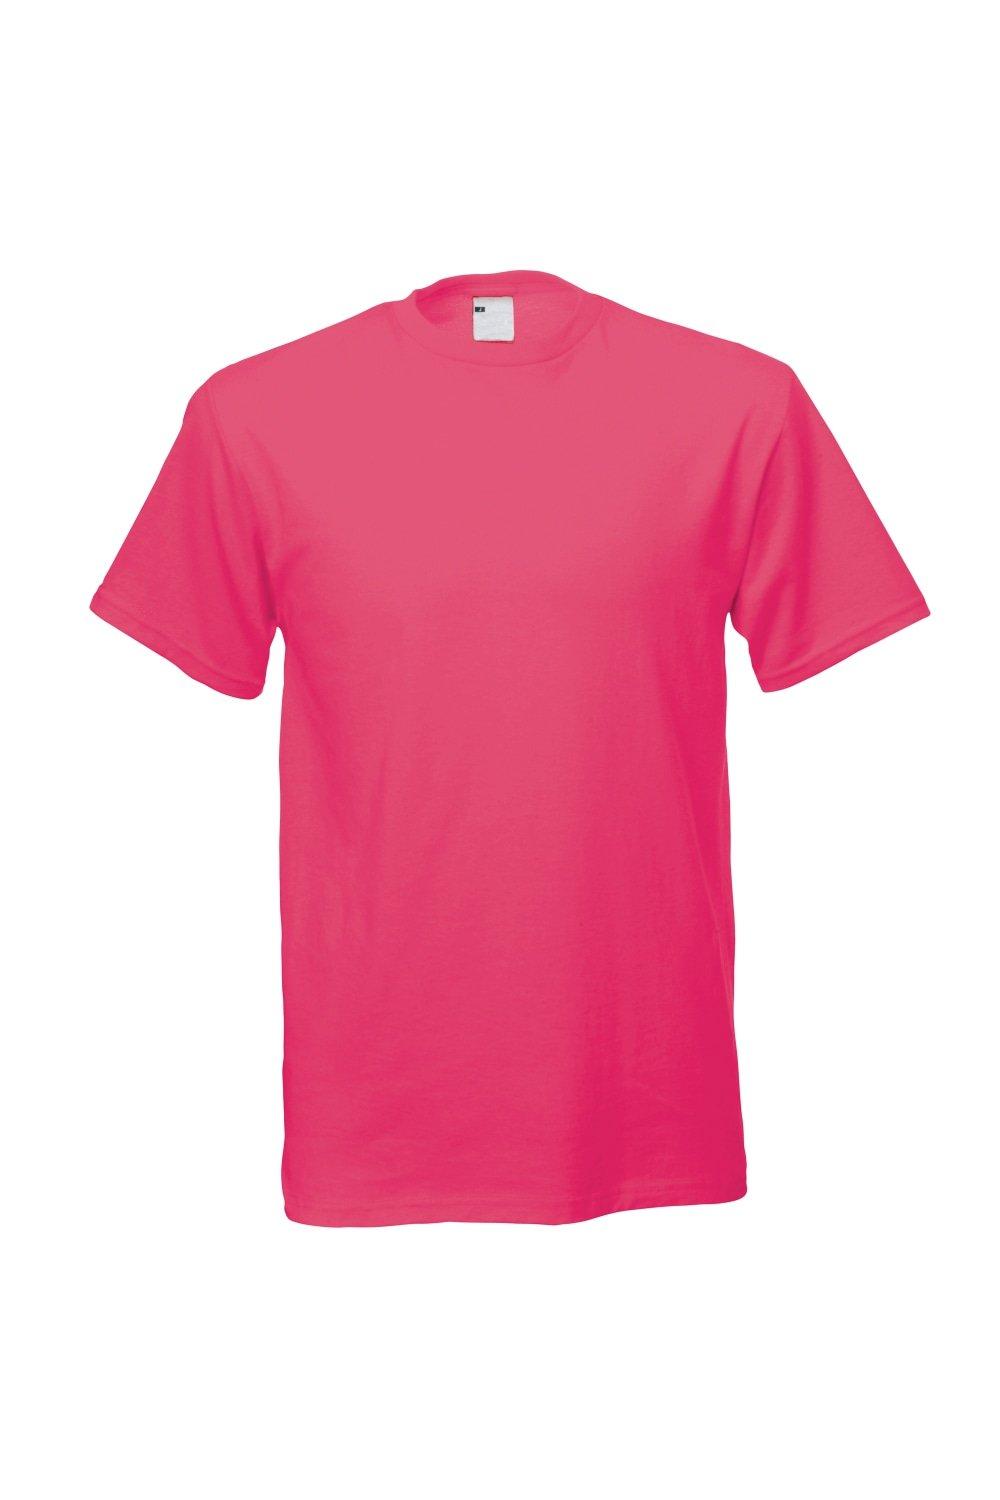 Повседневная футболка с коротким рукавом Universal Textiles, розовый мужская футболка веселый космонавт 2xl серый меланж